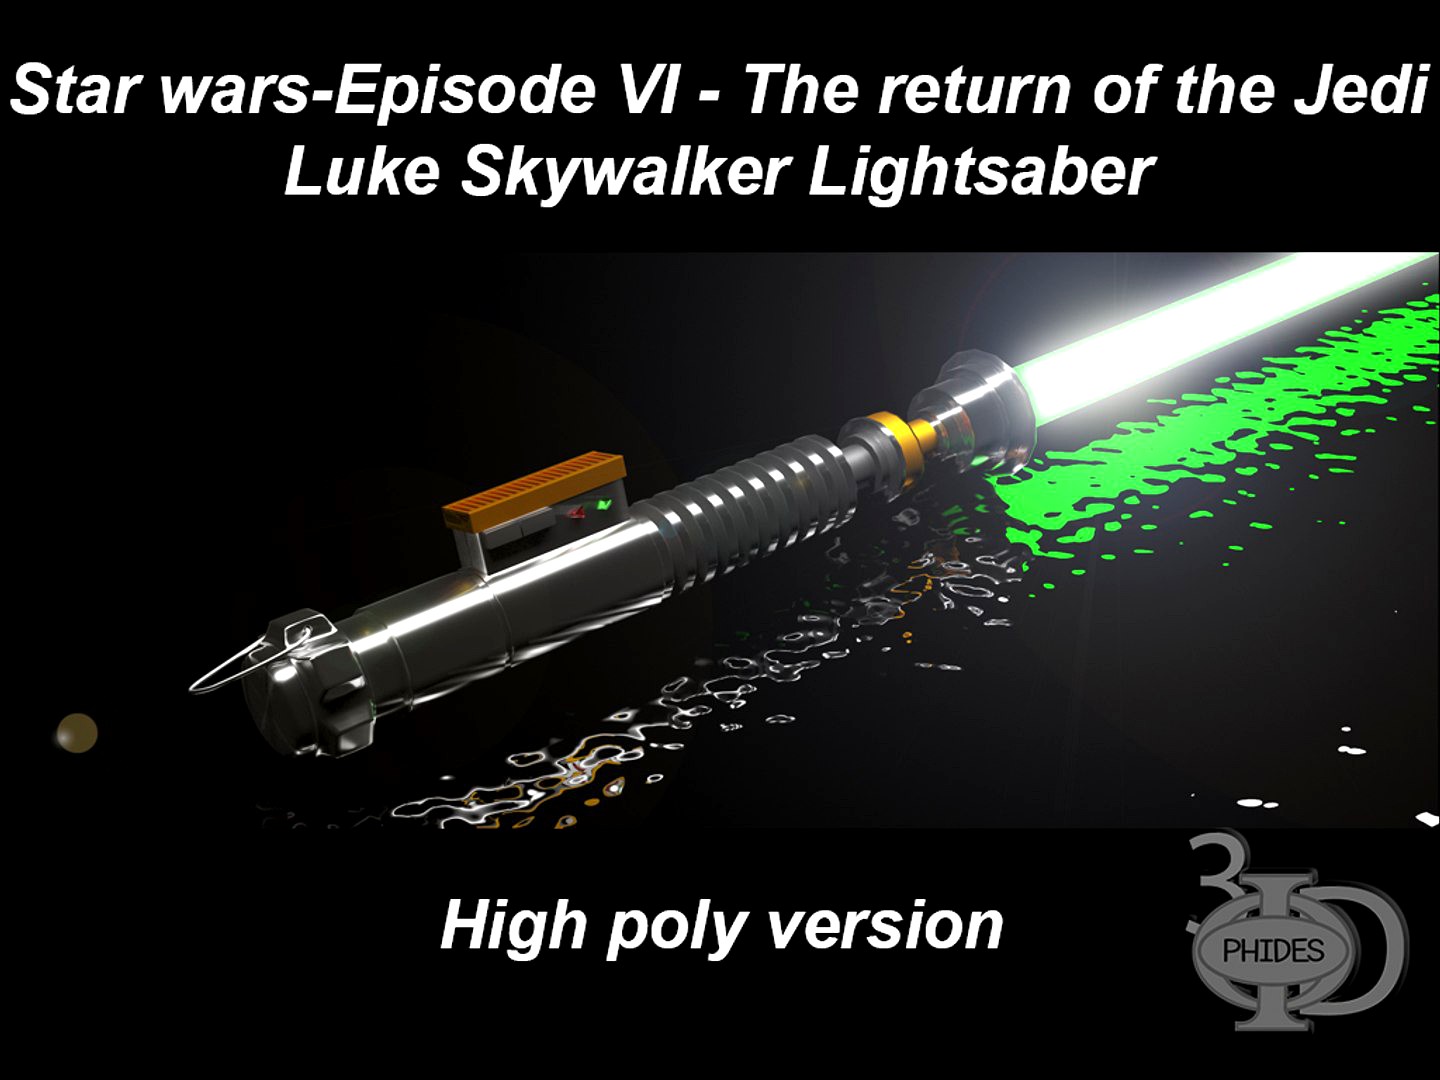 Luke's Lightsaber (high poly version)